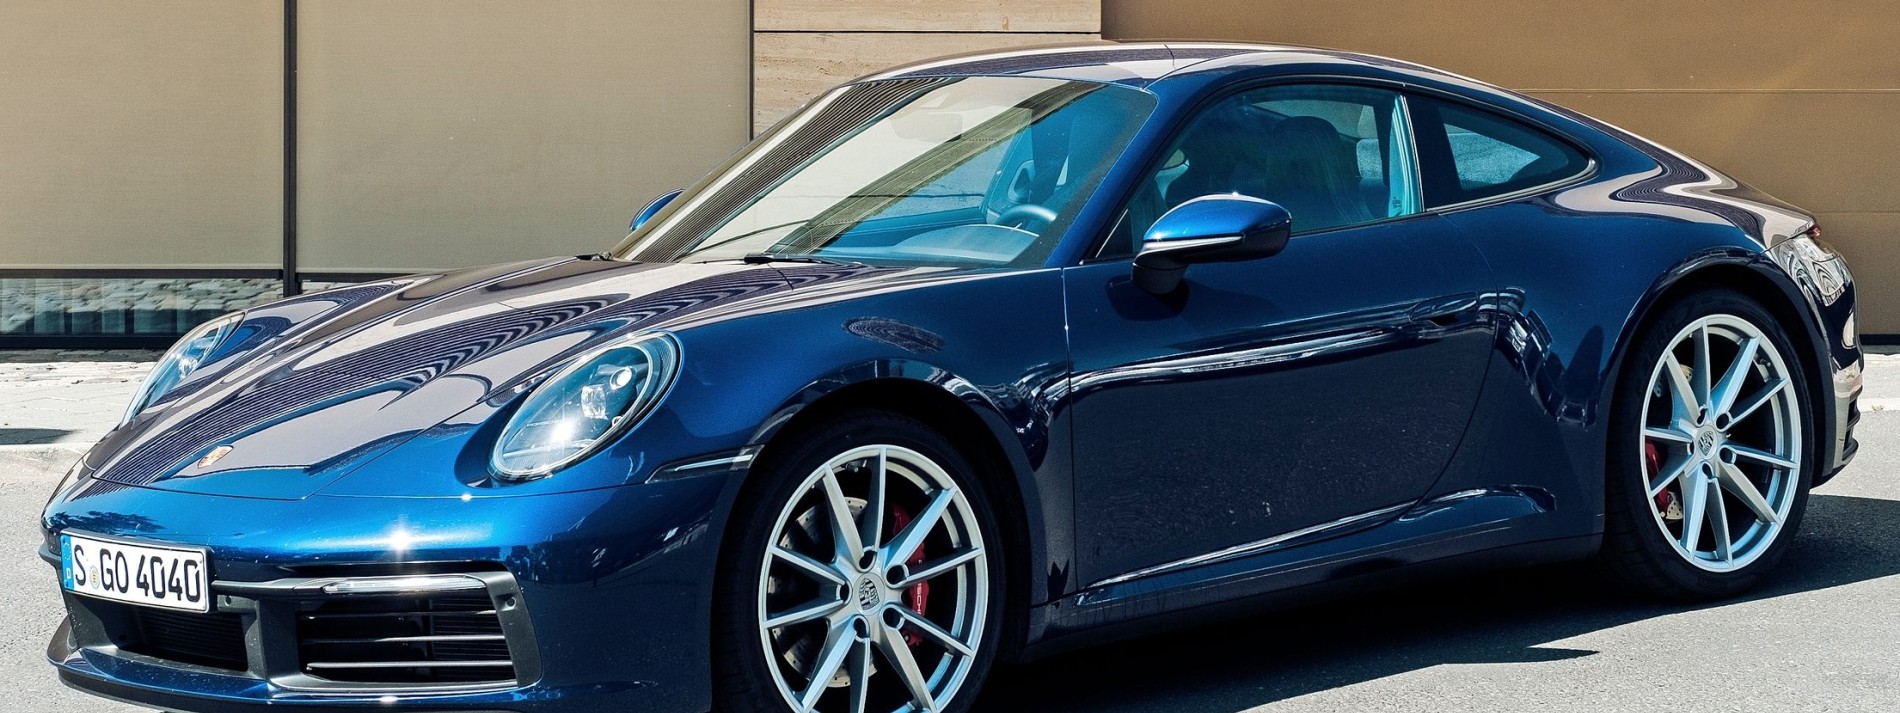 Porsche erhöht die Dividende am stärksten